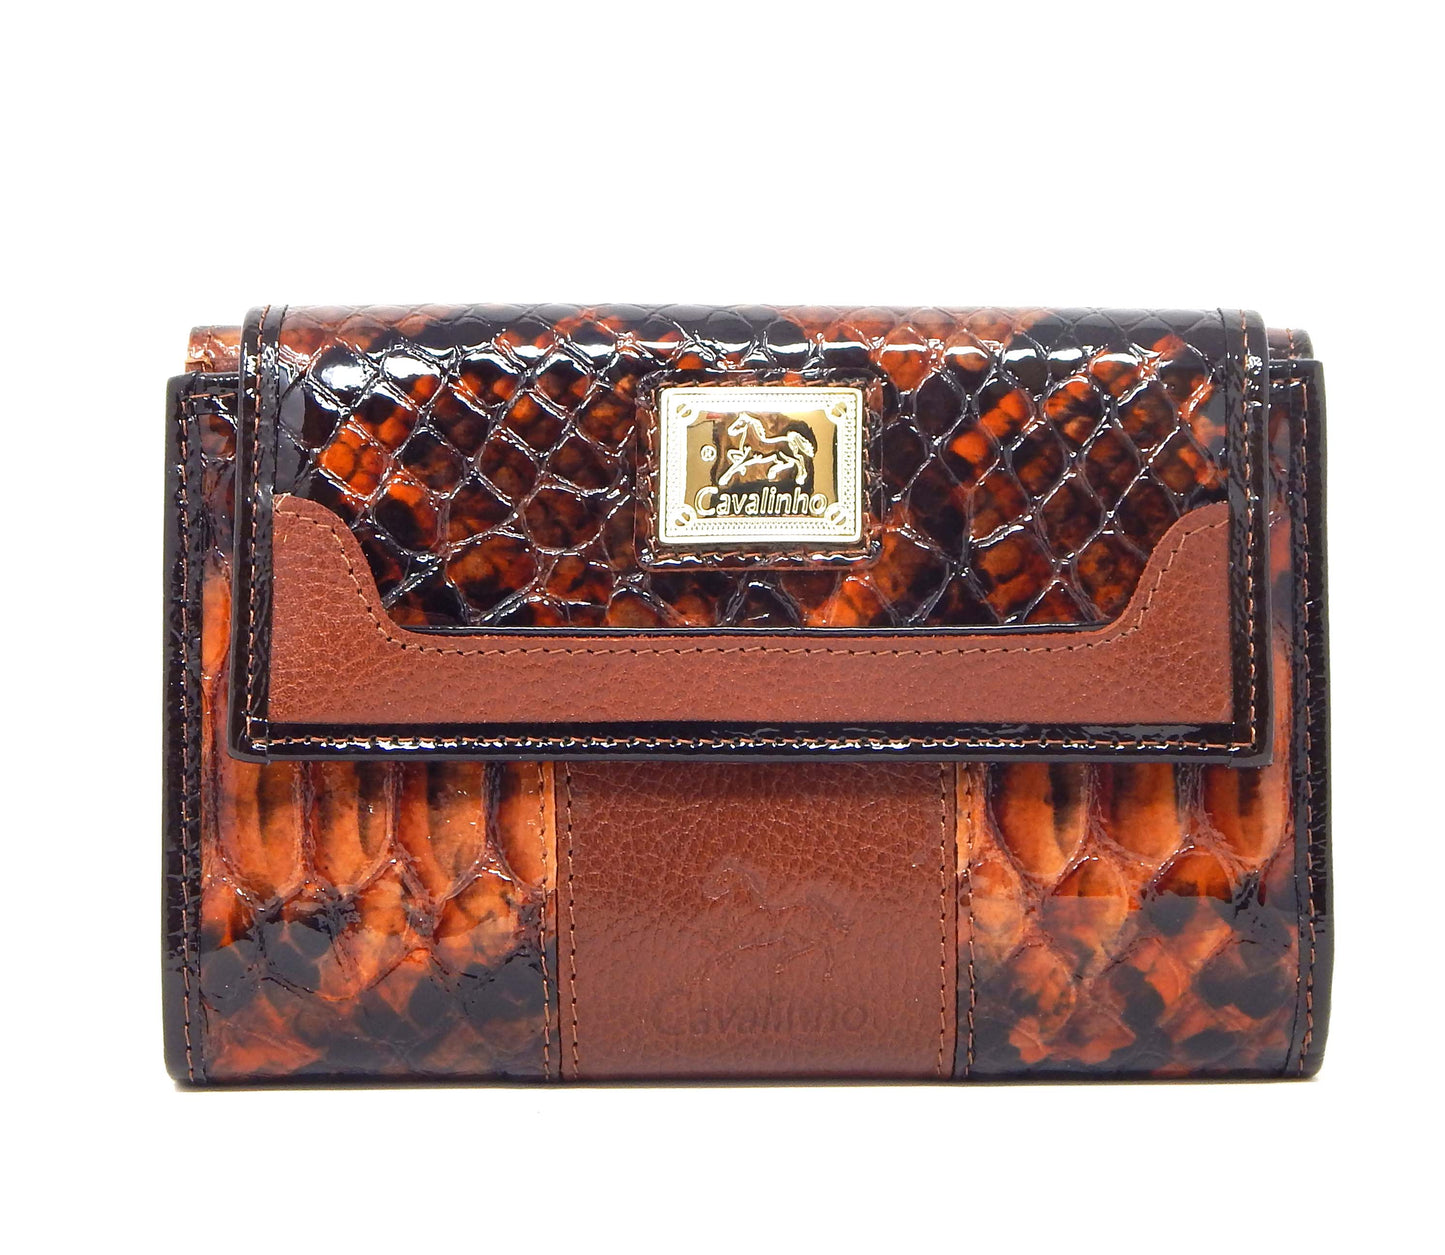 #color_ SaddleBrown | Cavalinho Honor Leather Wallet - SaddleBrown - 28190221.13.99_1